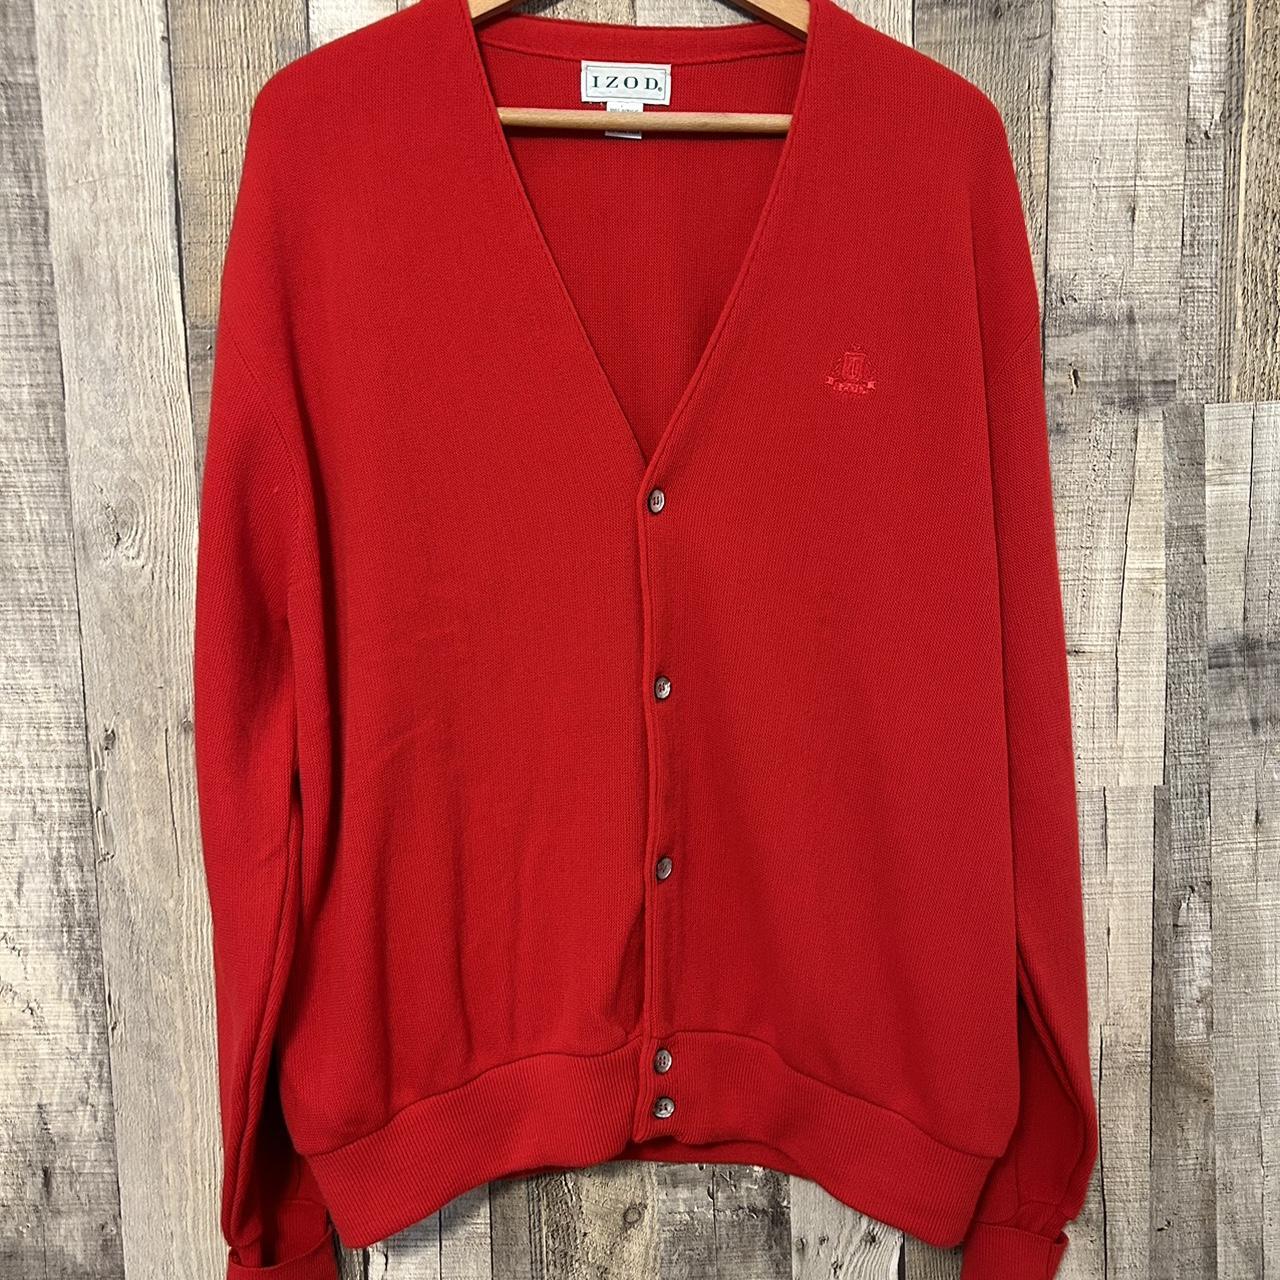 Vintage 1980’s Izod Cardigan Sweater Mens XL V-Neck... - Depop